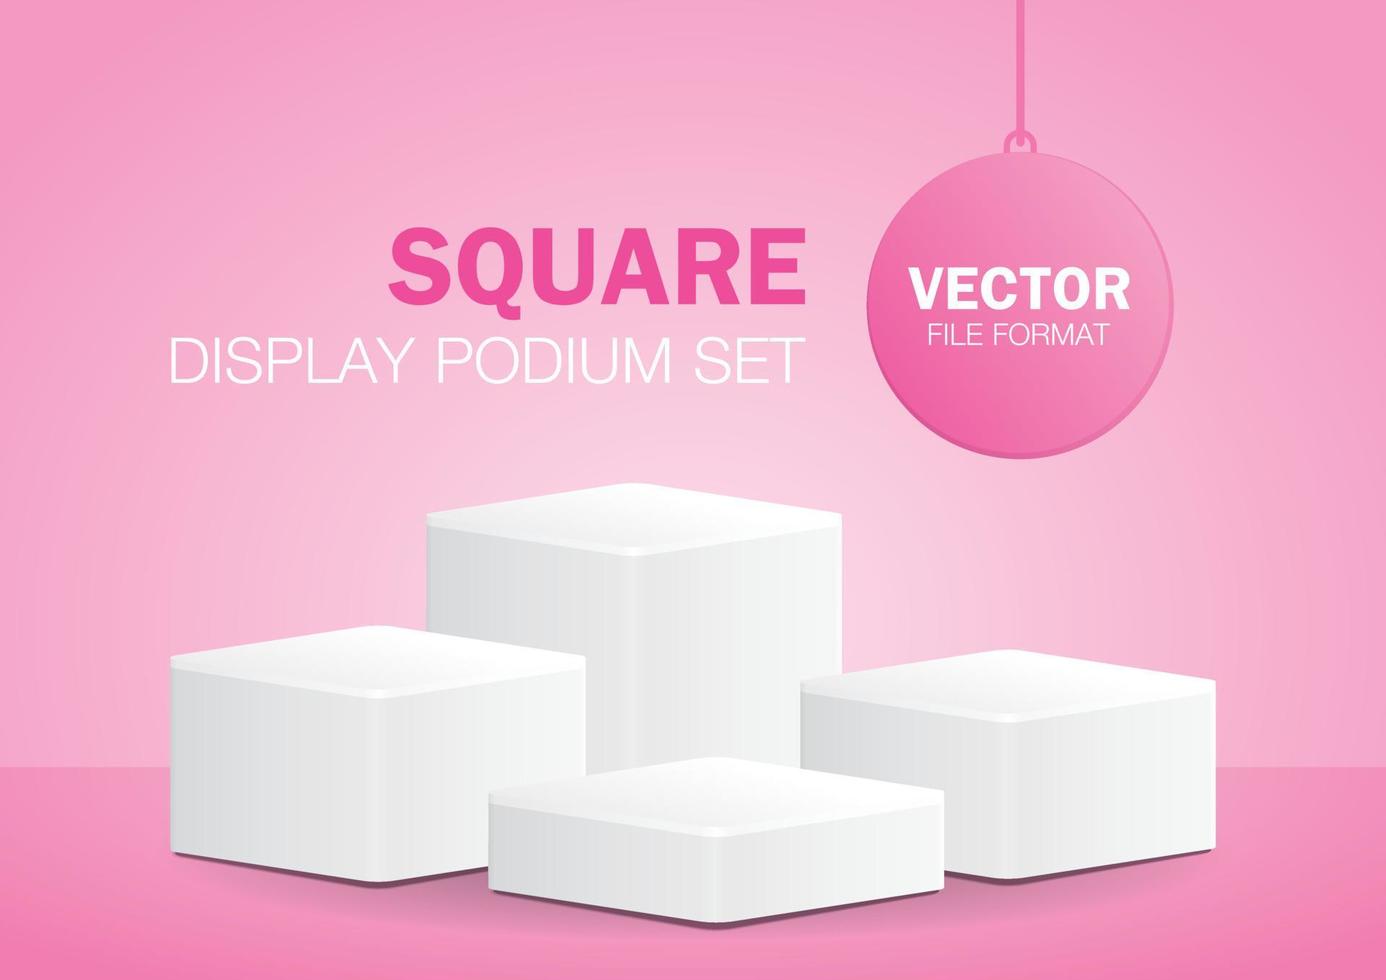 conjunto de podio de producto cuadrado blanco mínimo vector de ilustración 3d sobre fondo rosa pastel para poner su objeto